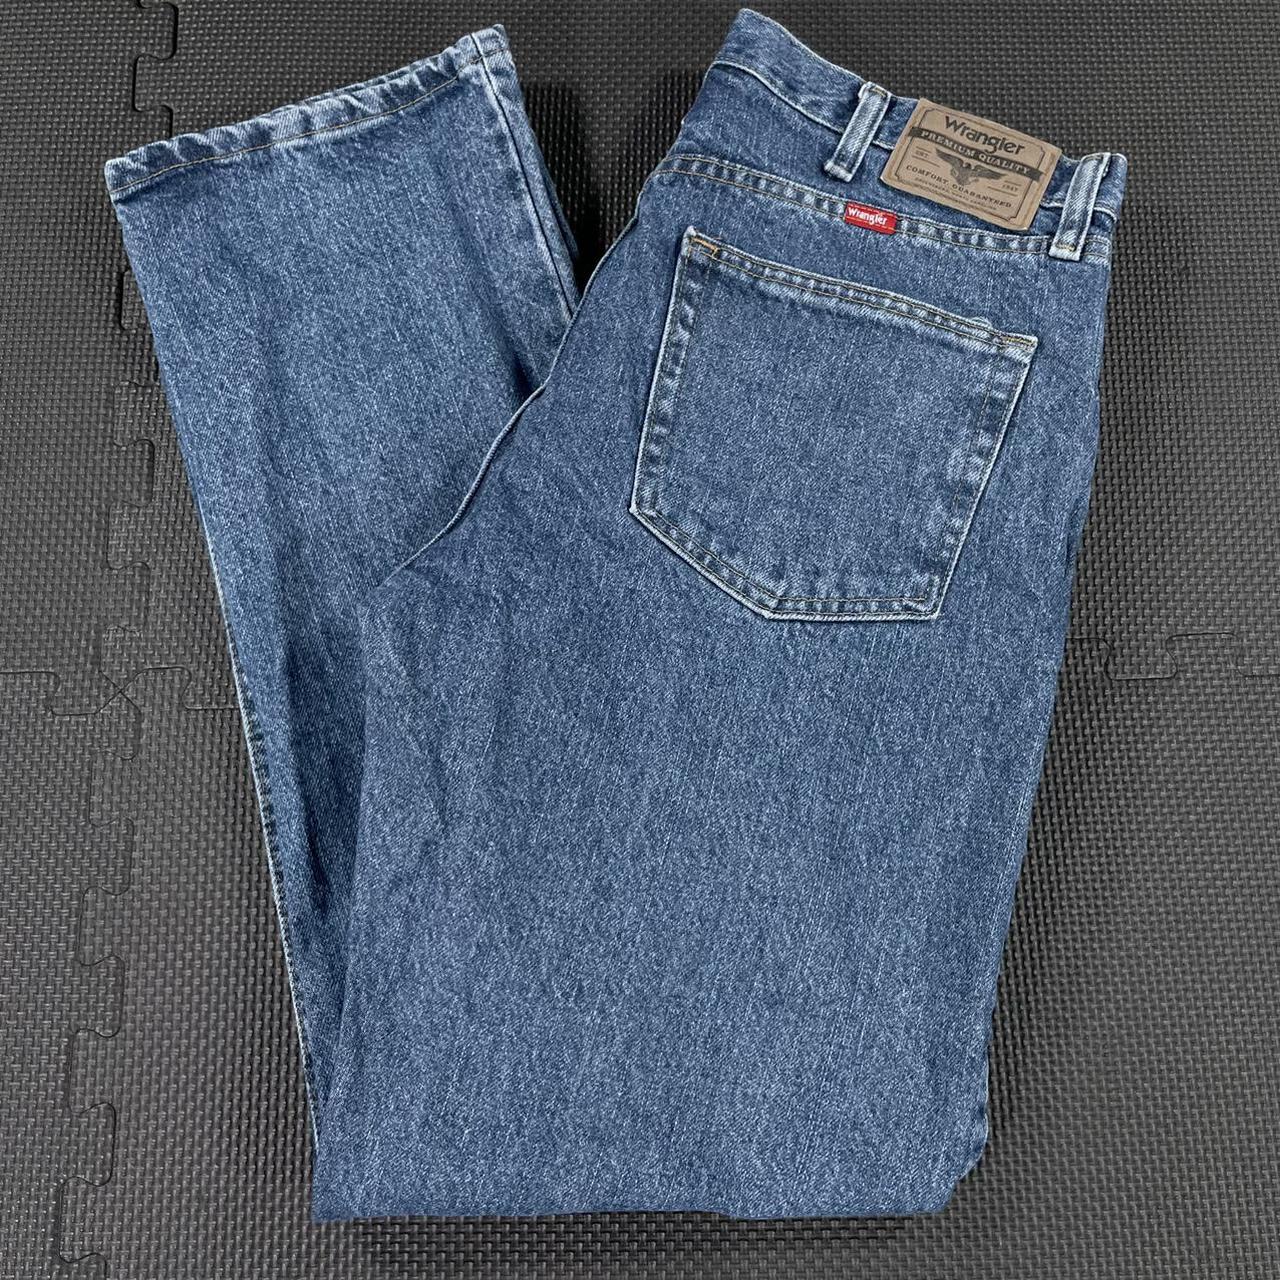 Wrangler 96501DS Blue Denim Jeans Men’s 34x30 Medium... - Depop